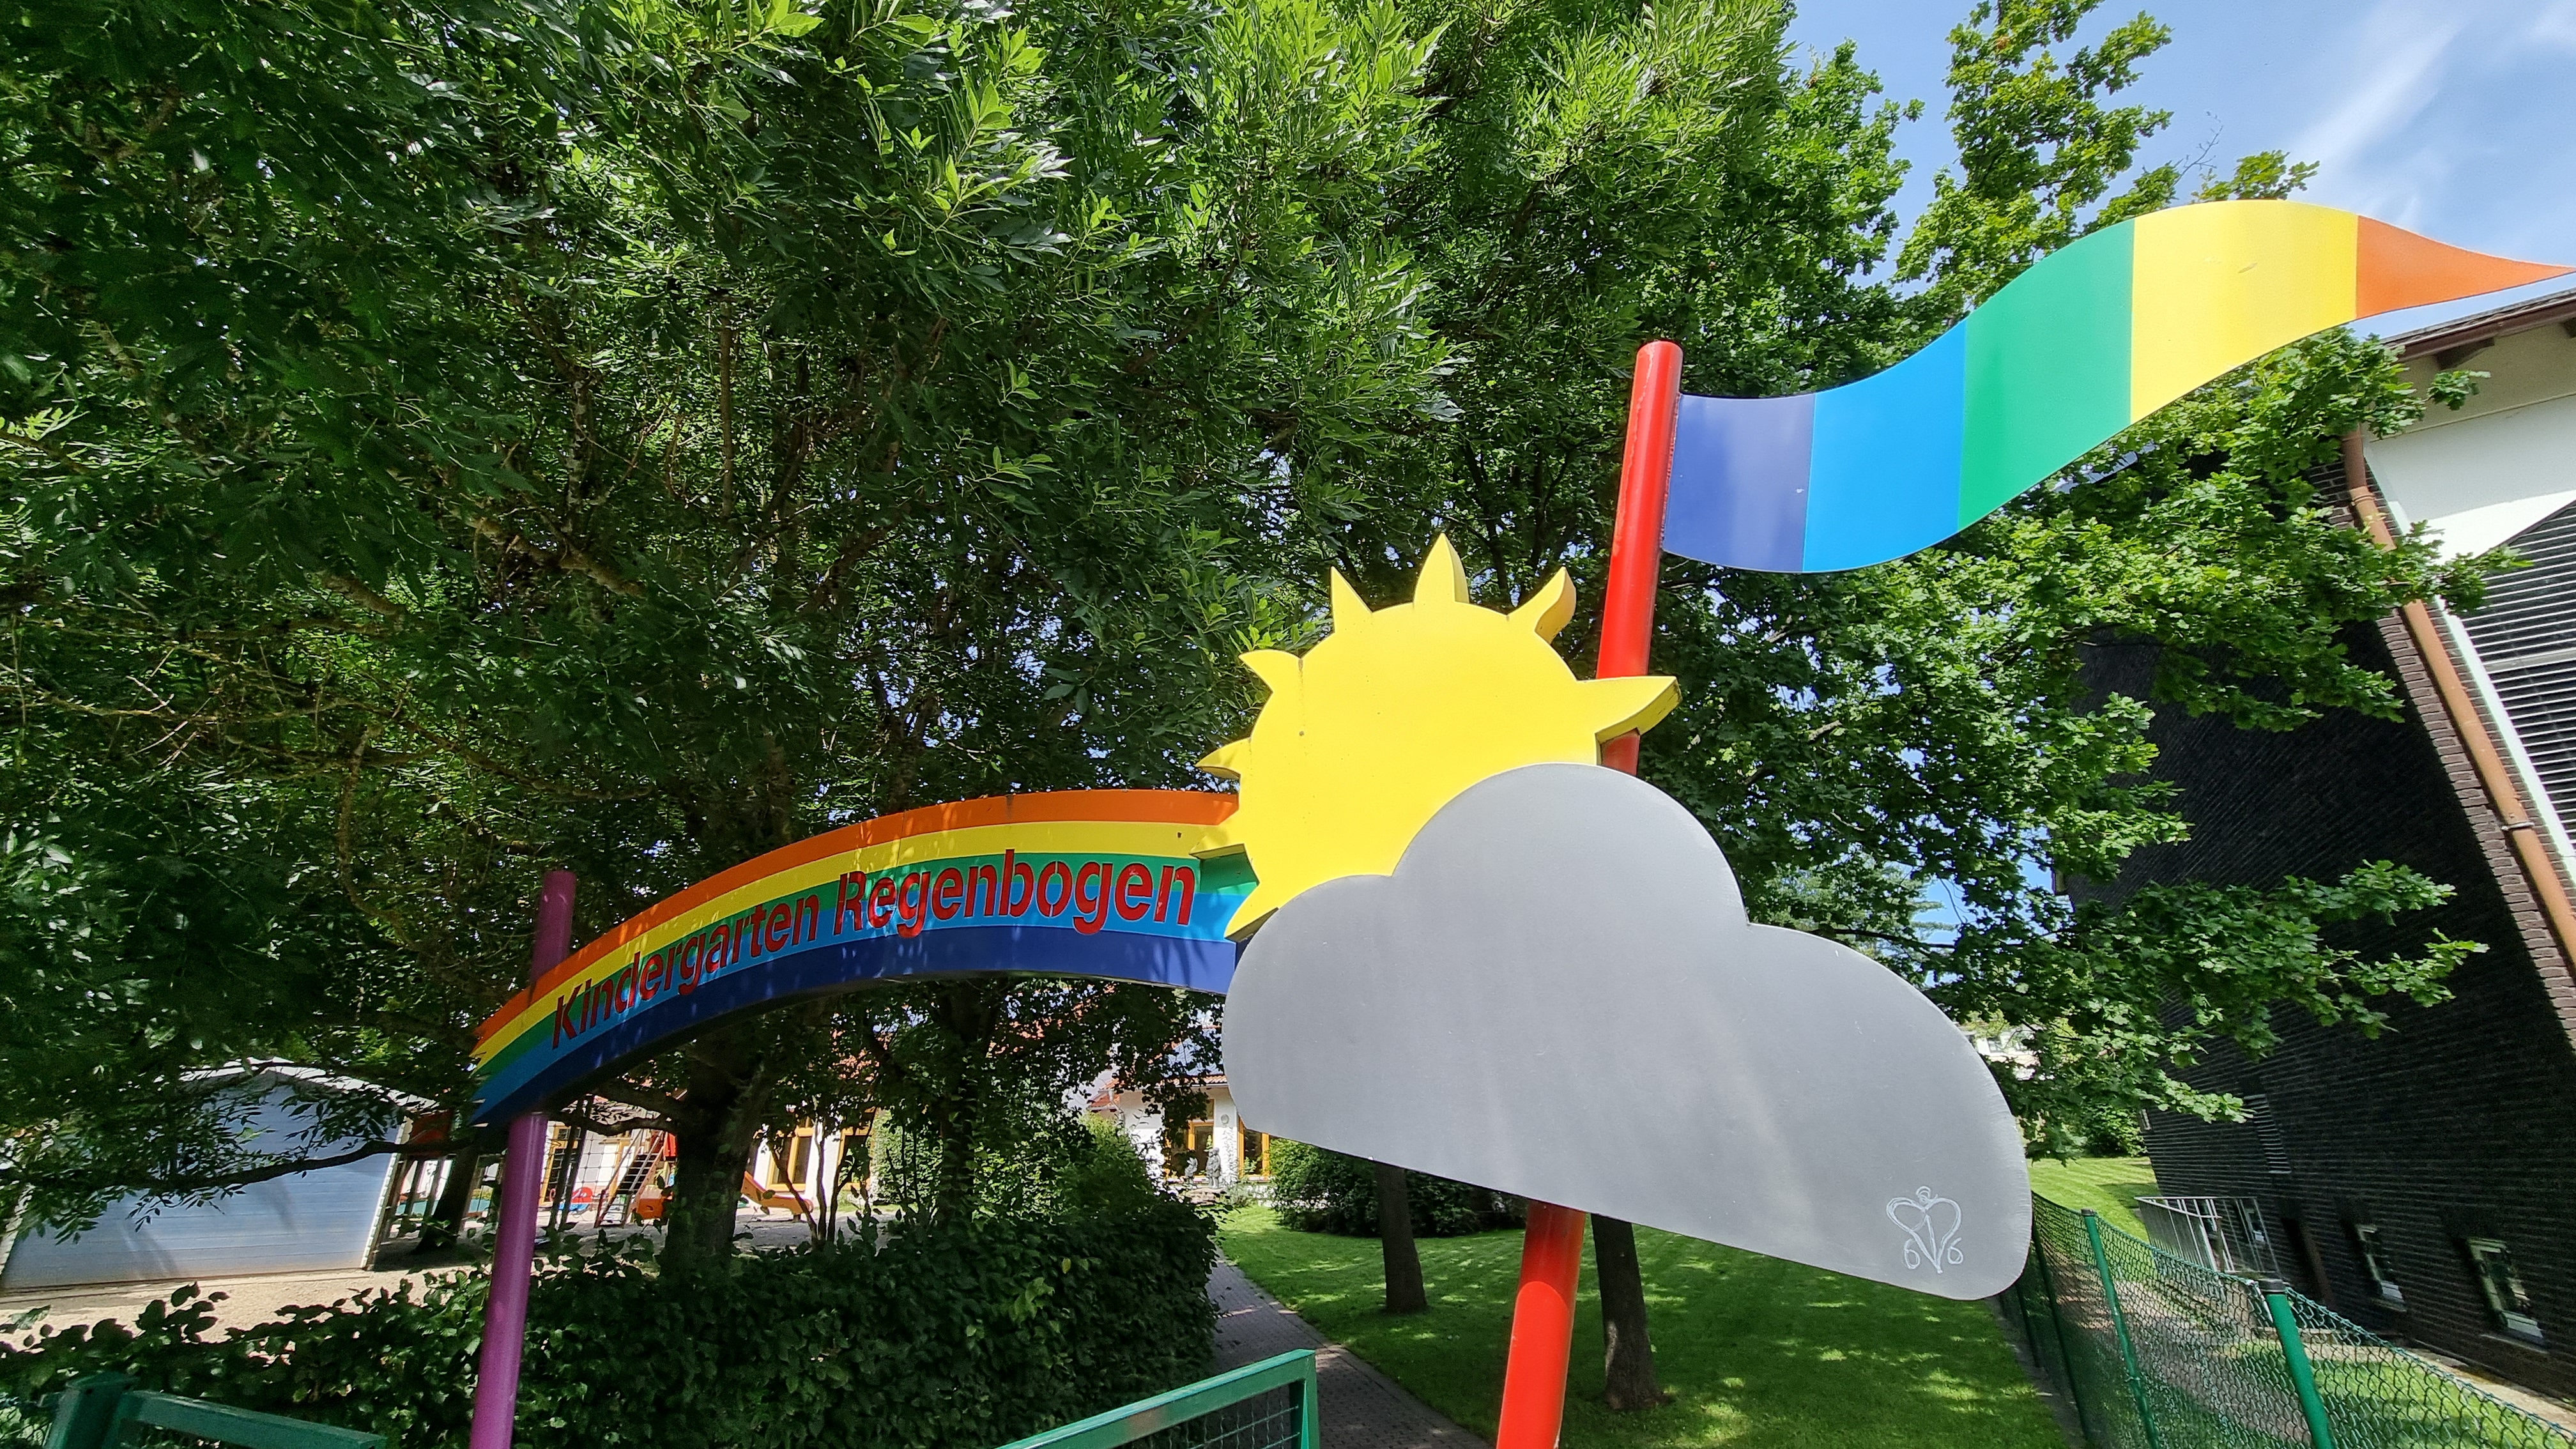 Das Begrüßungsportal des Kigas Regenbogen mit Sonne, Wolke, wehender Fahne und dem namensgebenden Regenbogen.